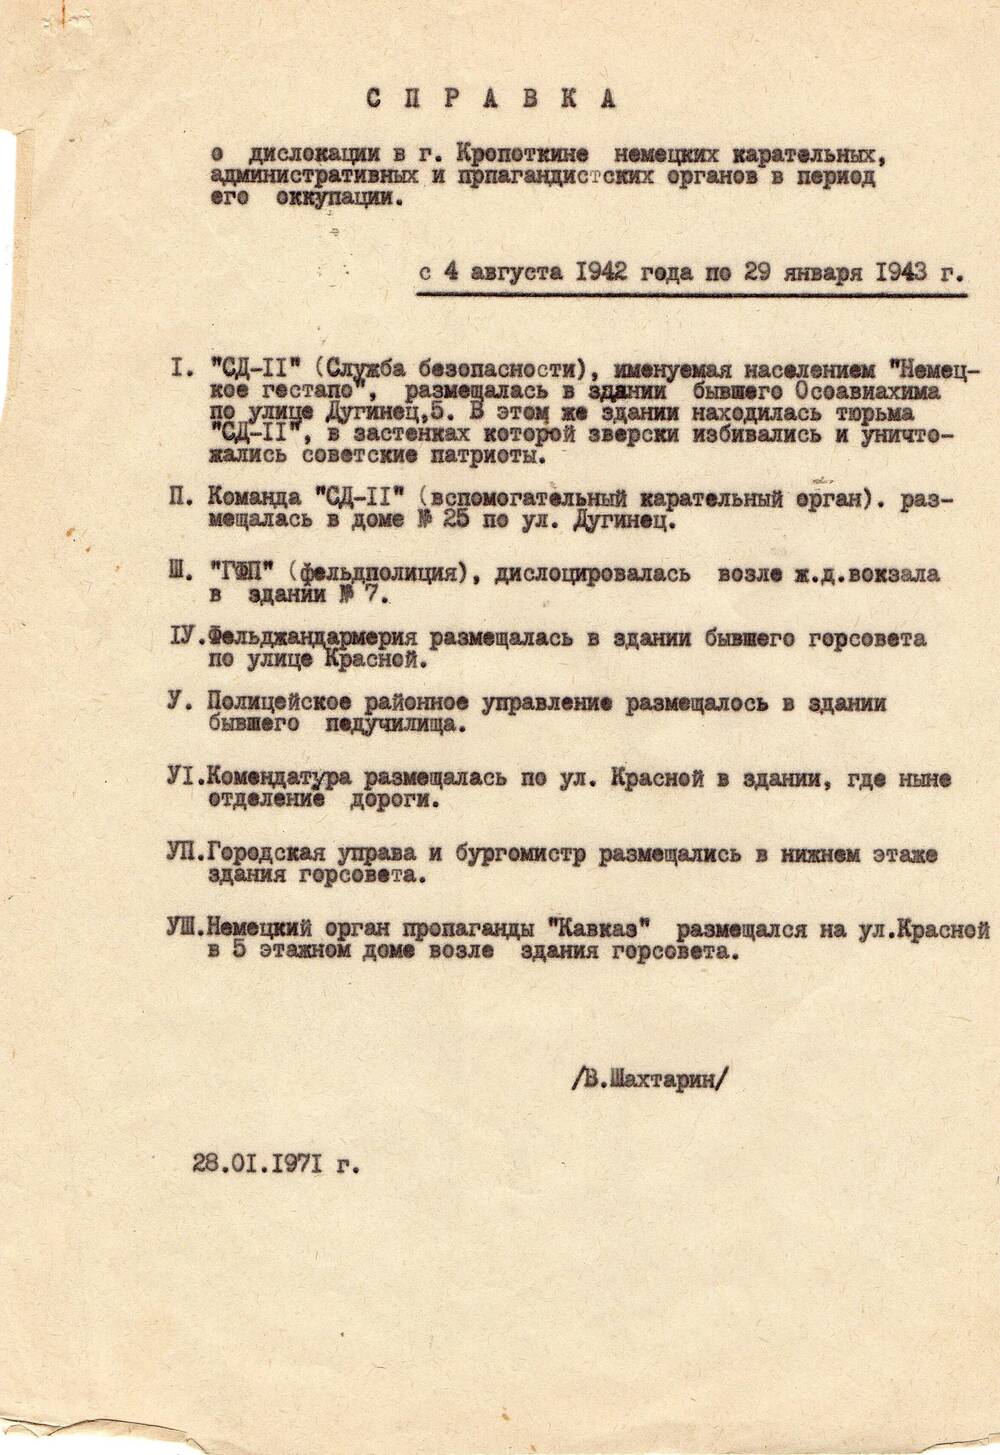 Справка о дислокации в городе Кропоткине немецких карательных, административных и пропагандистских органов в период его оккупации  с 4 августа 1942 по 29 января 1943 гг.